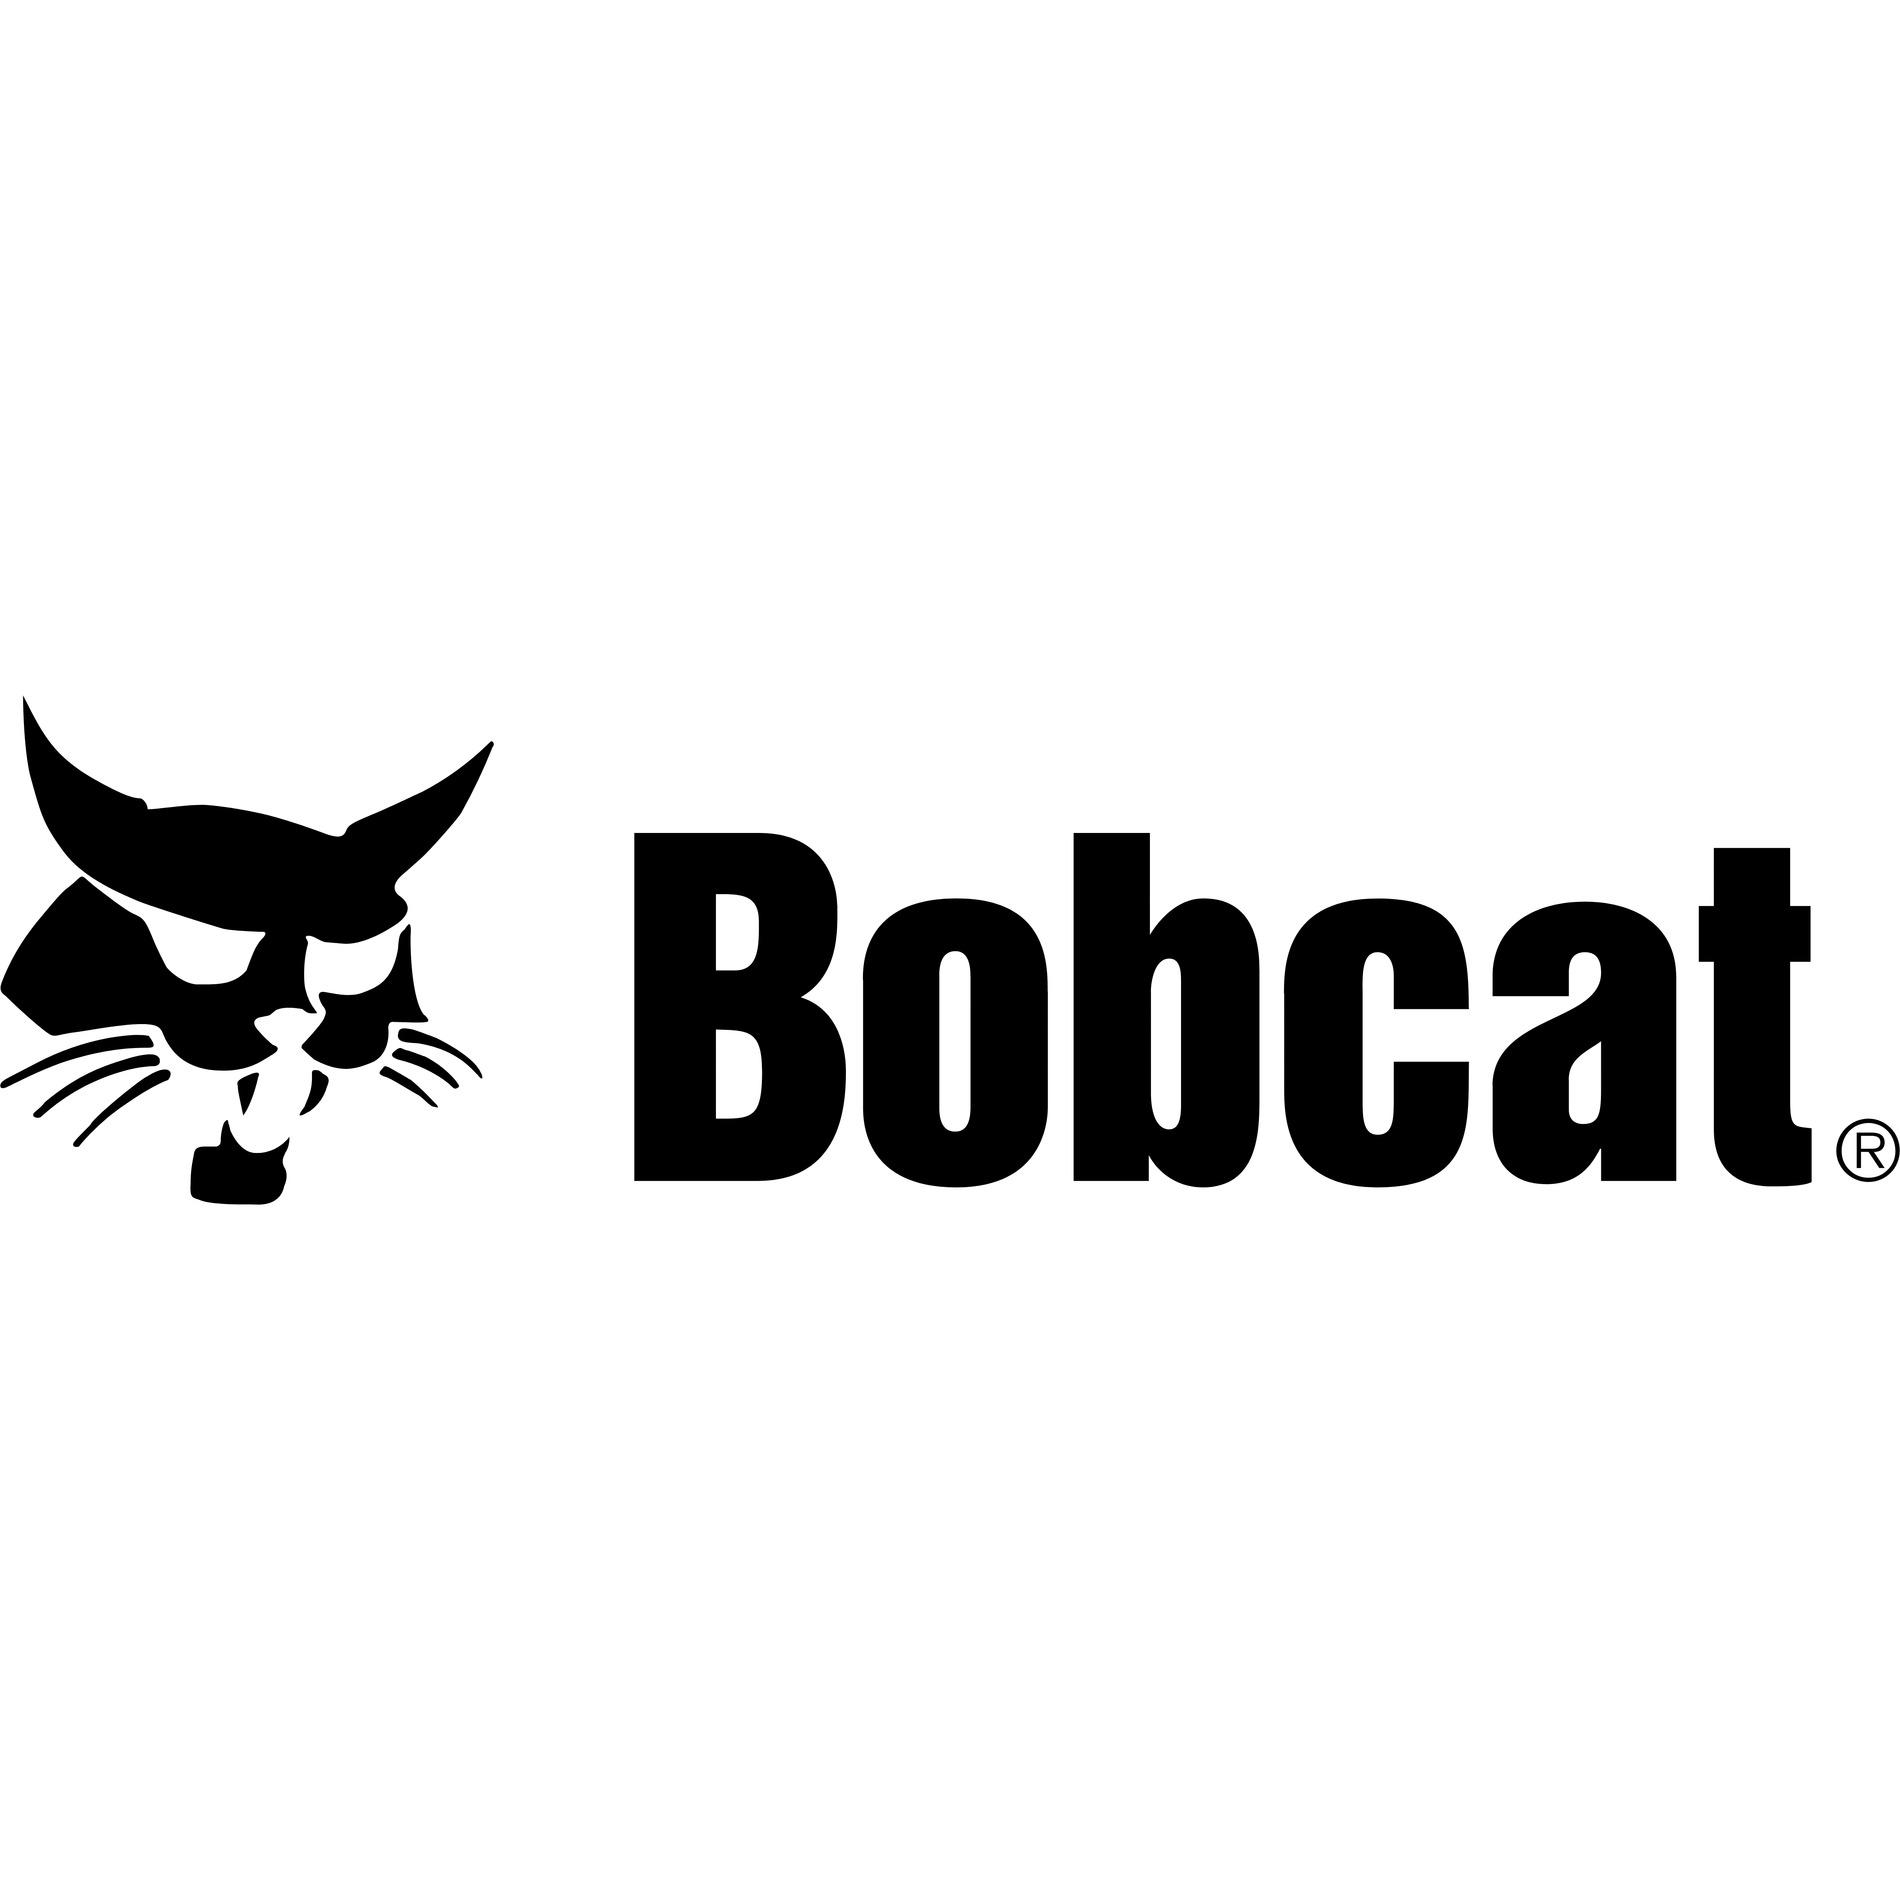 Tri-State Bobcat